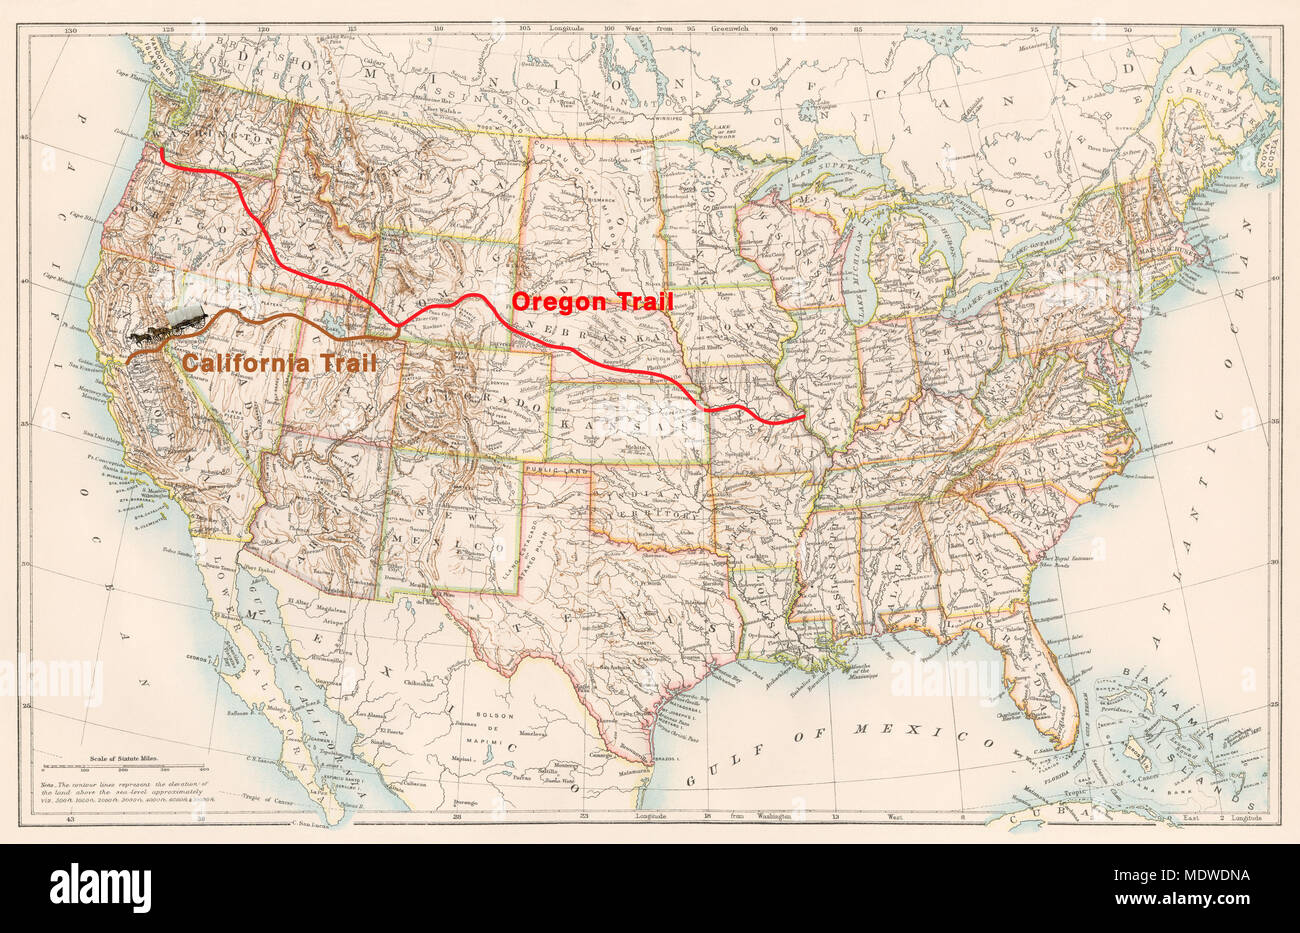 Oregon Trail Und California Trail Routen Auf Einer 1870er Karte Der USA 